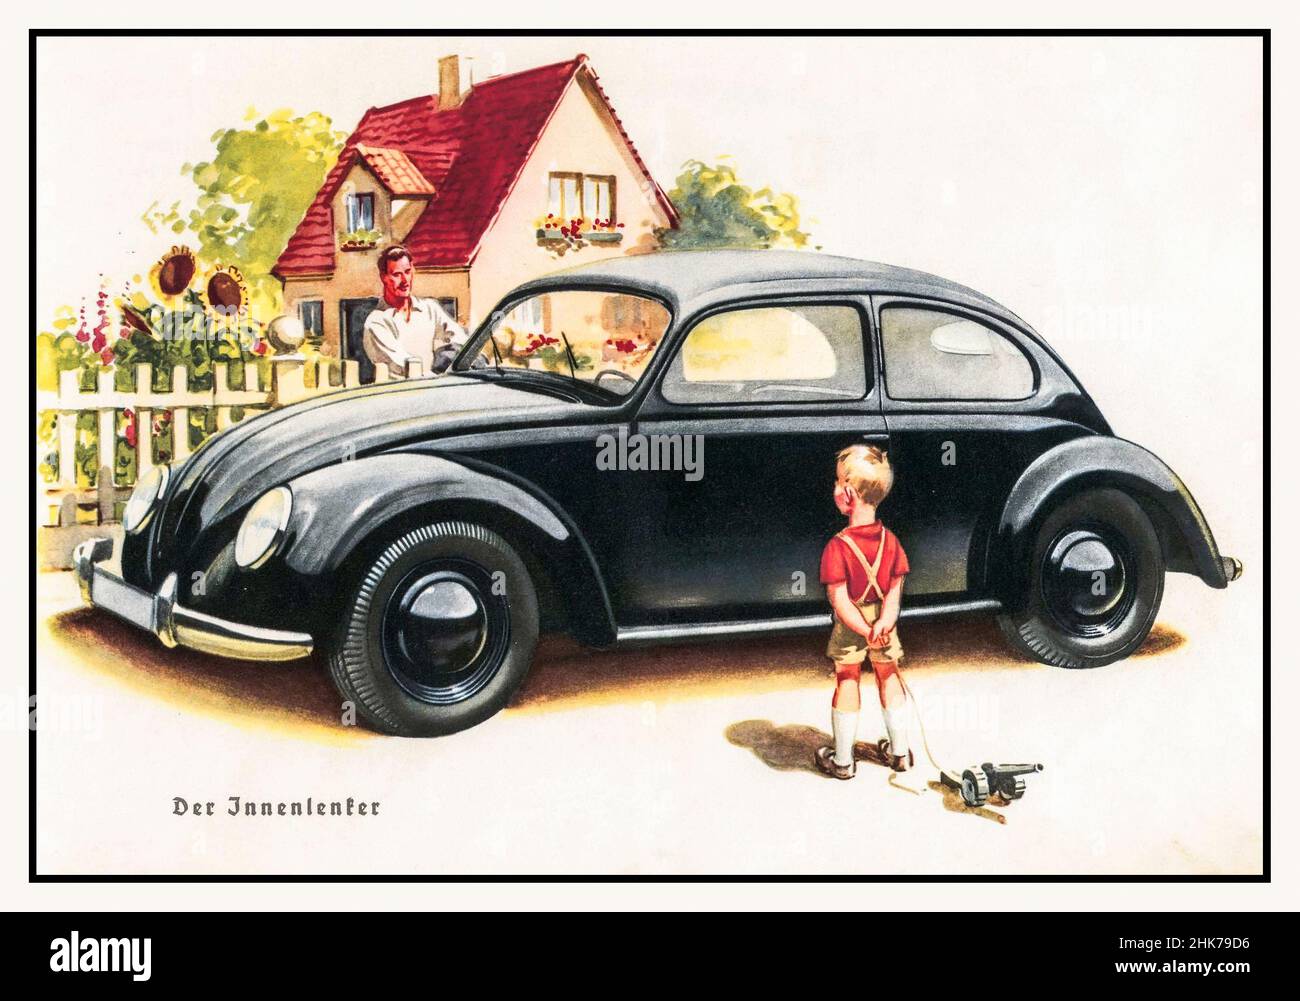 KDF Wagen 1930s pubblicità Volkswagen KDF Wagen, illustrazione dal manuale della prima Volkswagen / Beetle, 1939. Disegno: Ferdinand Porsche. Adolf Hitlers popoli auto che illustrano uno stile di vita idealistico sotto il regime nazista Foto Stock